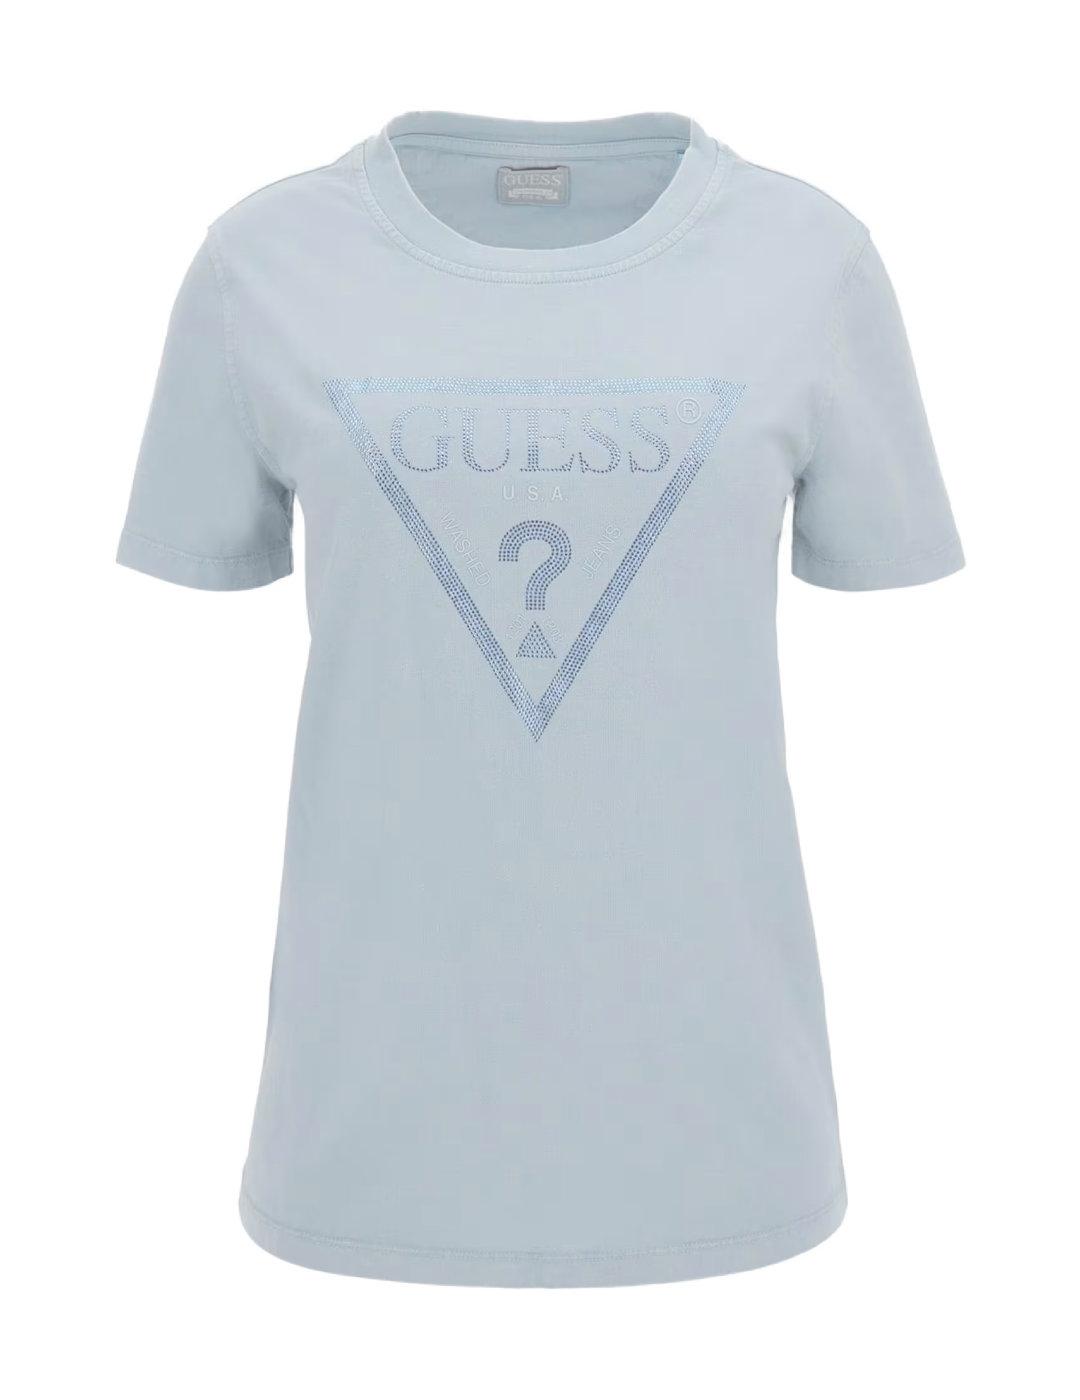 Camiseta Guess Vintage azul celeste manga corta para mujer